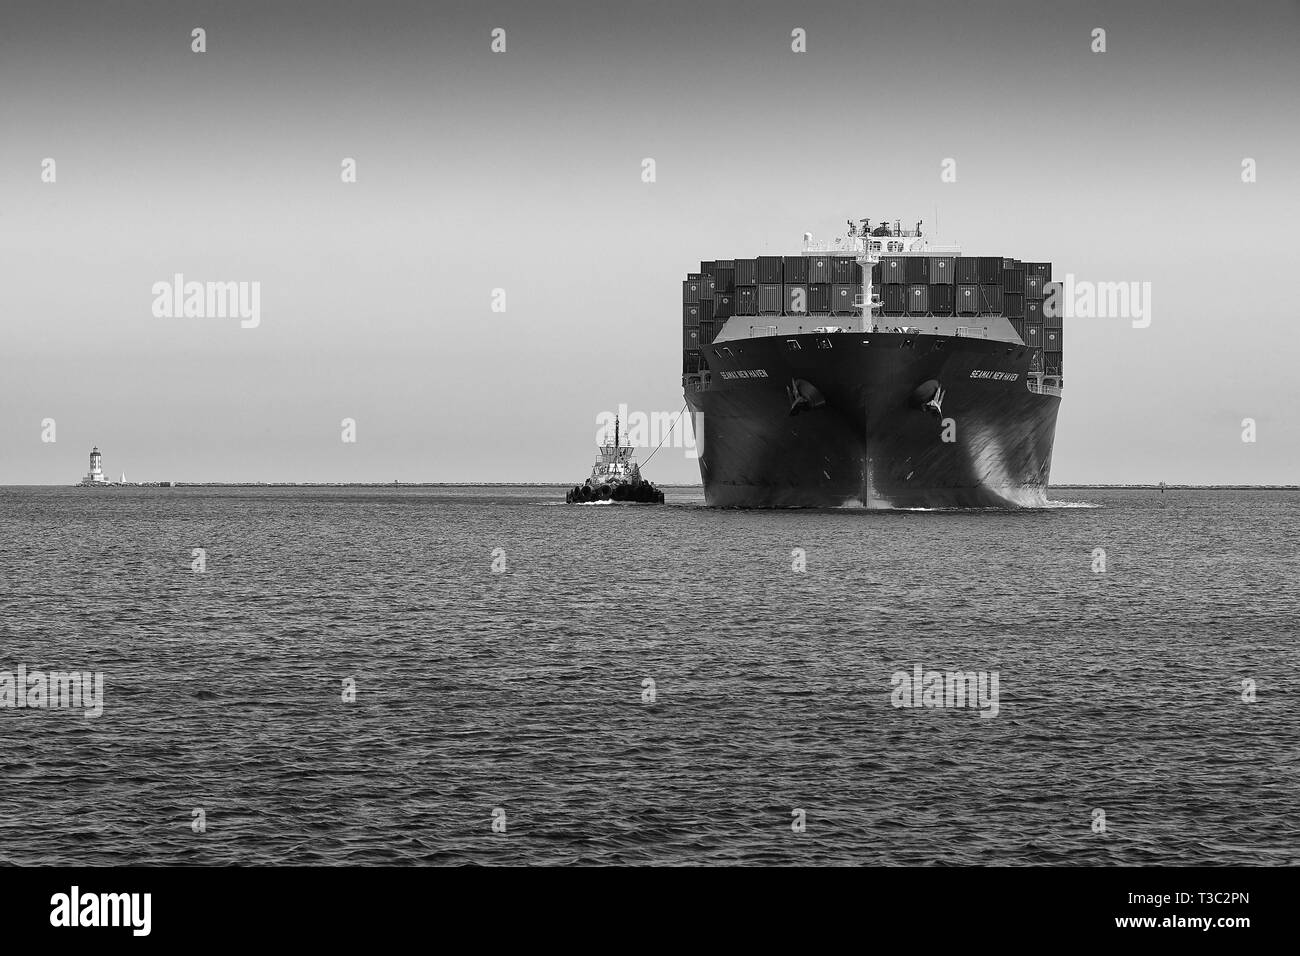 Immagine in bianco e nero della nave portacontainer, SEAMAX NEW HAVEN, che entra nel canale principale di Los Angeles nel porto di Los Angeles, California, USA. Foto Stock